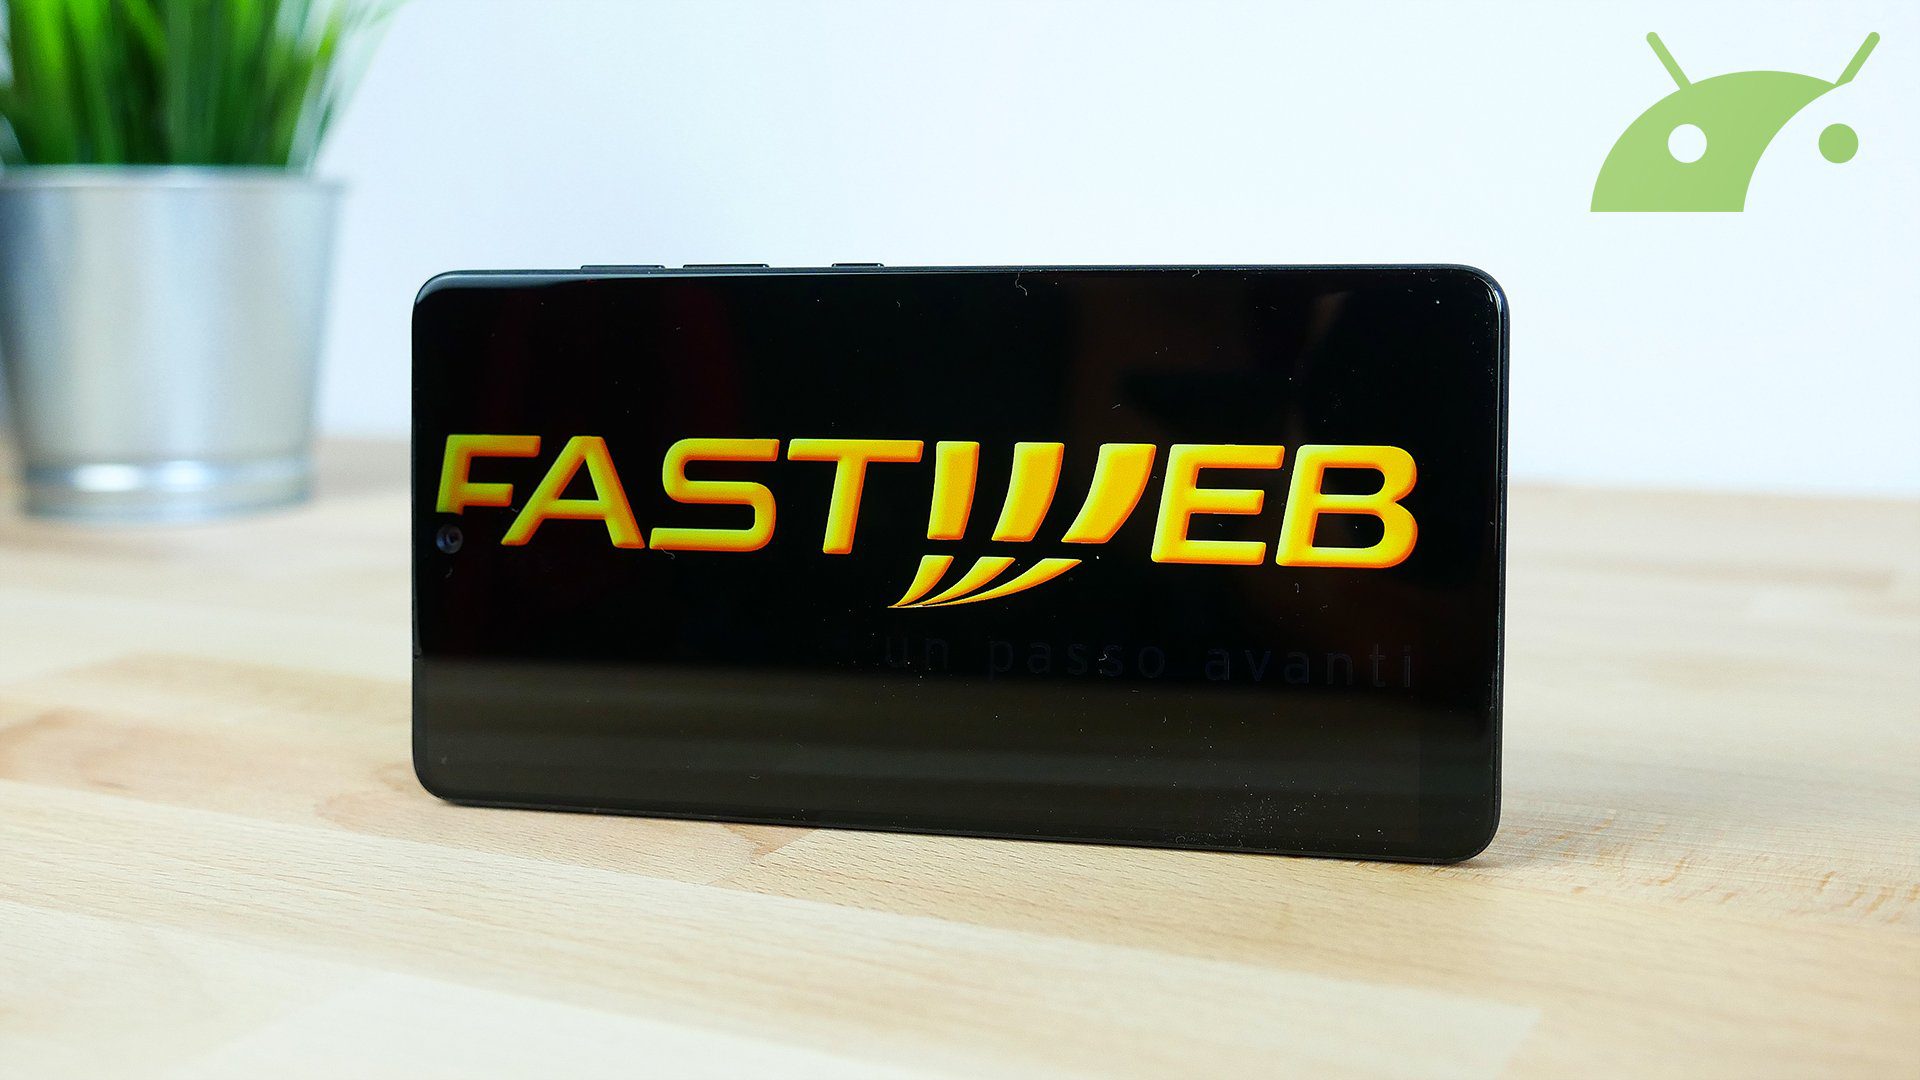 Fastweb logo